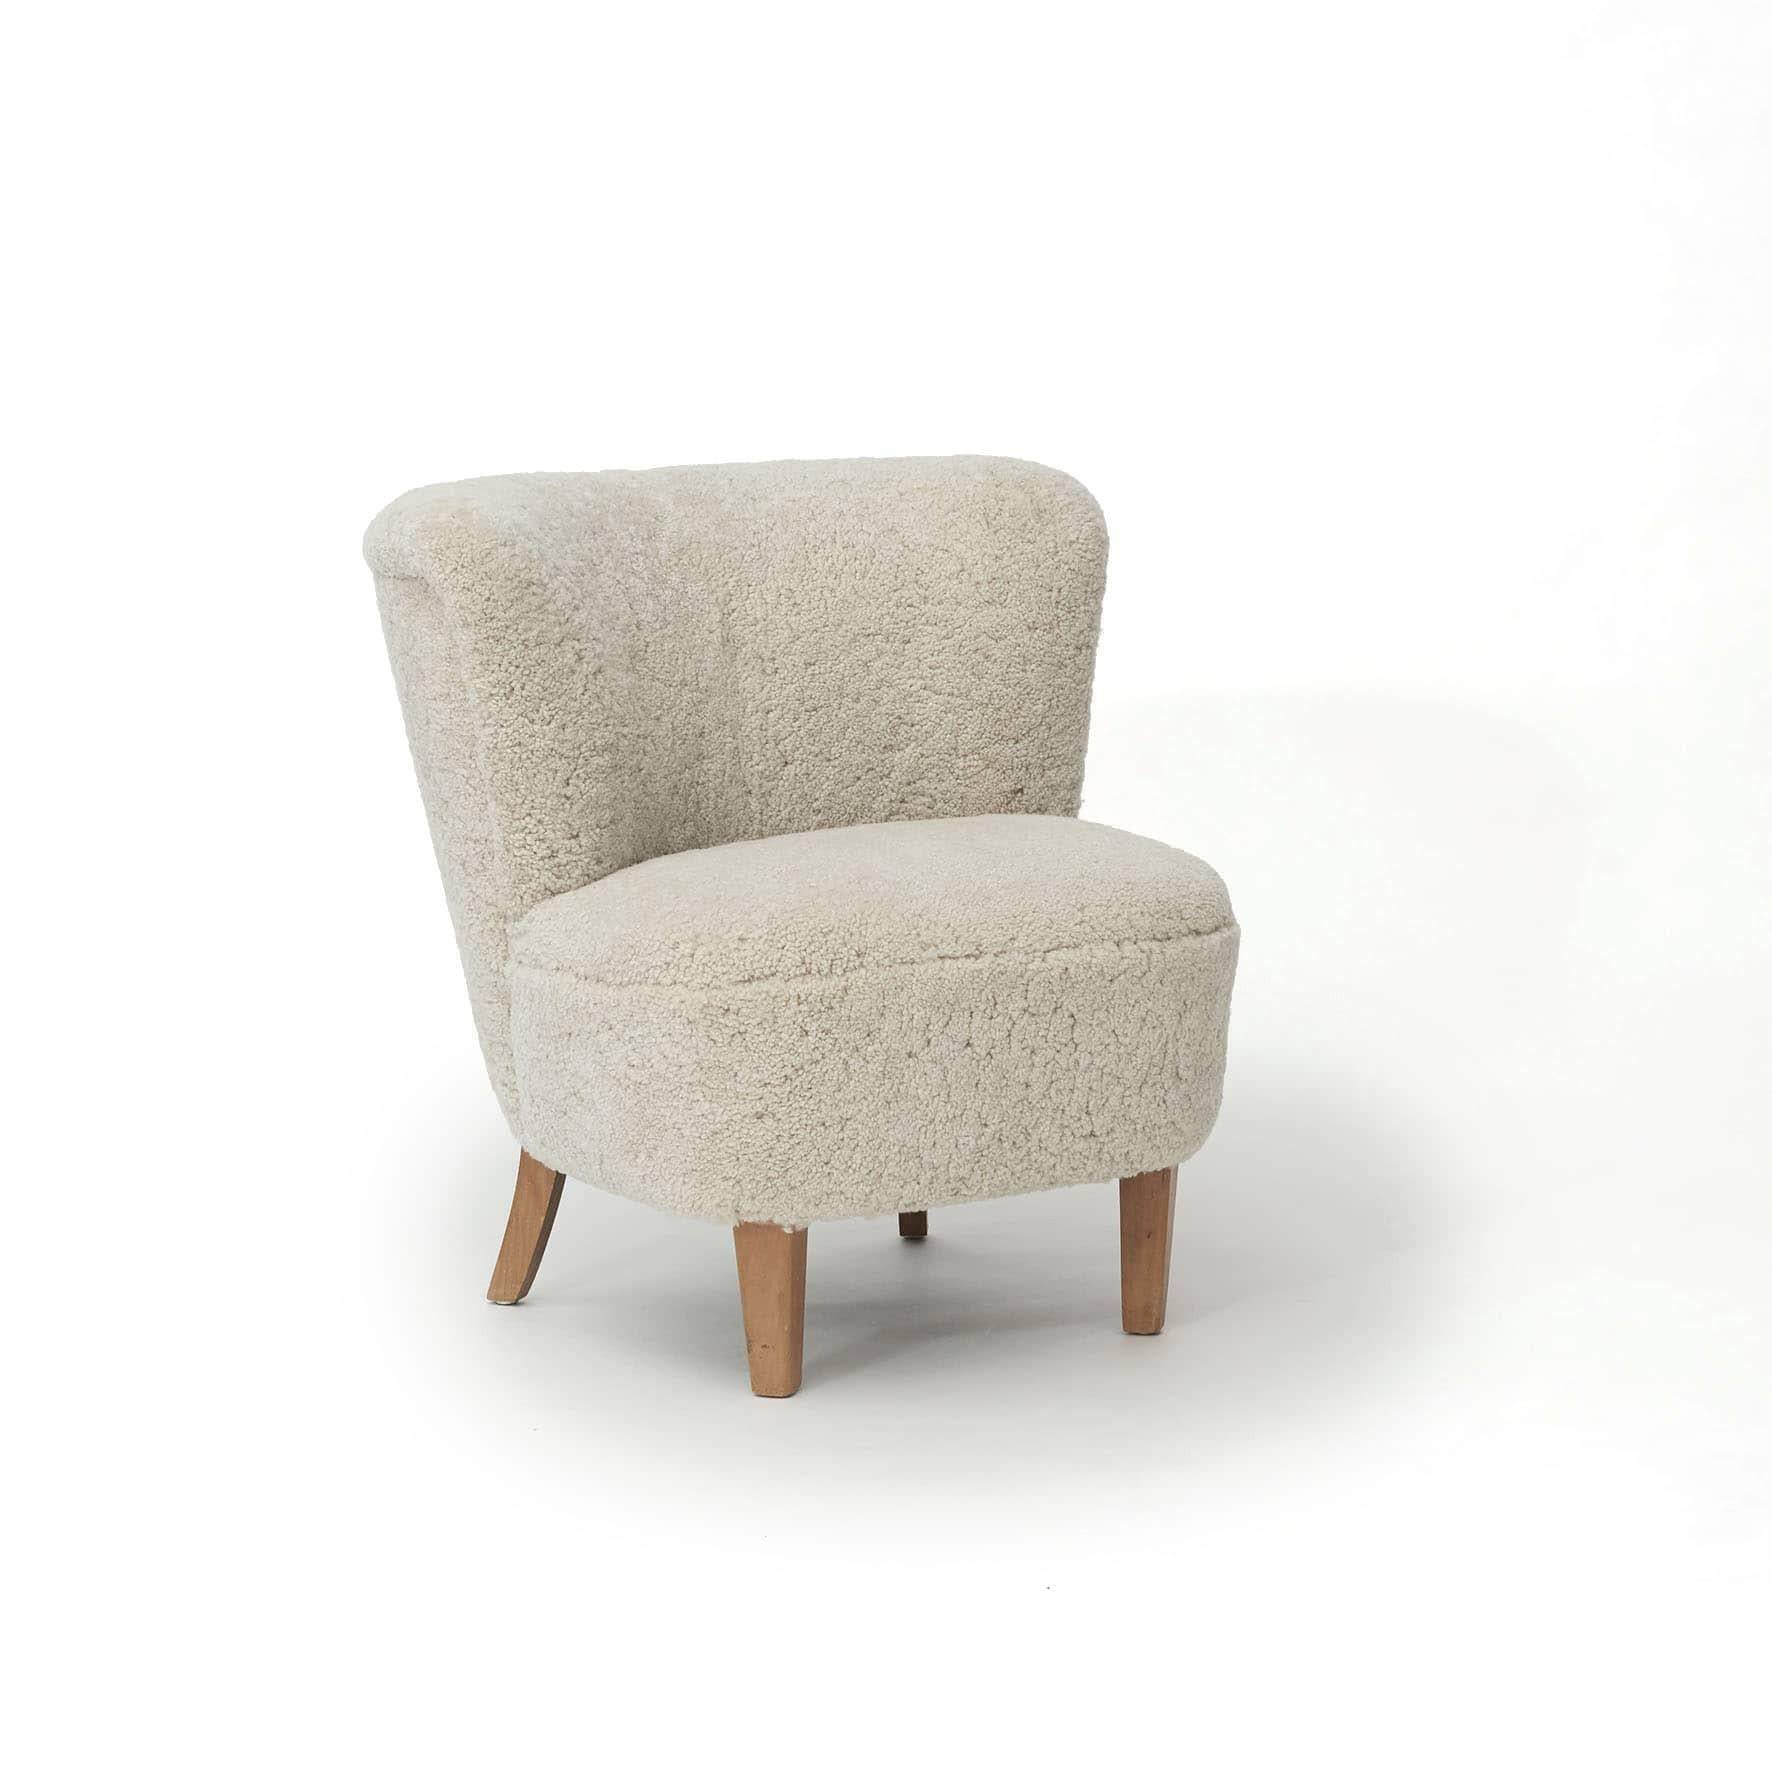 Par des chaises longues. Design et ébénisterie danois, 1940-1950.
Nouvellement tapissé en cuir d'agneau de très belle qualité.
Confort d'assise médiocre.
Vendu comme une paire pour € 11.050.
 